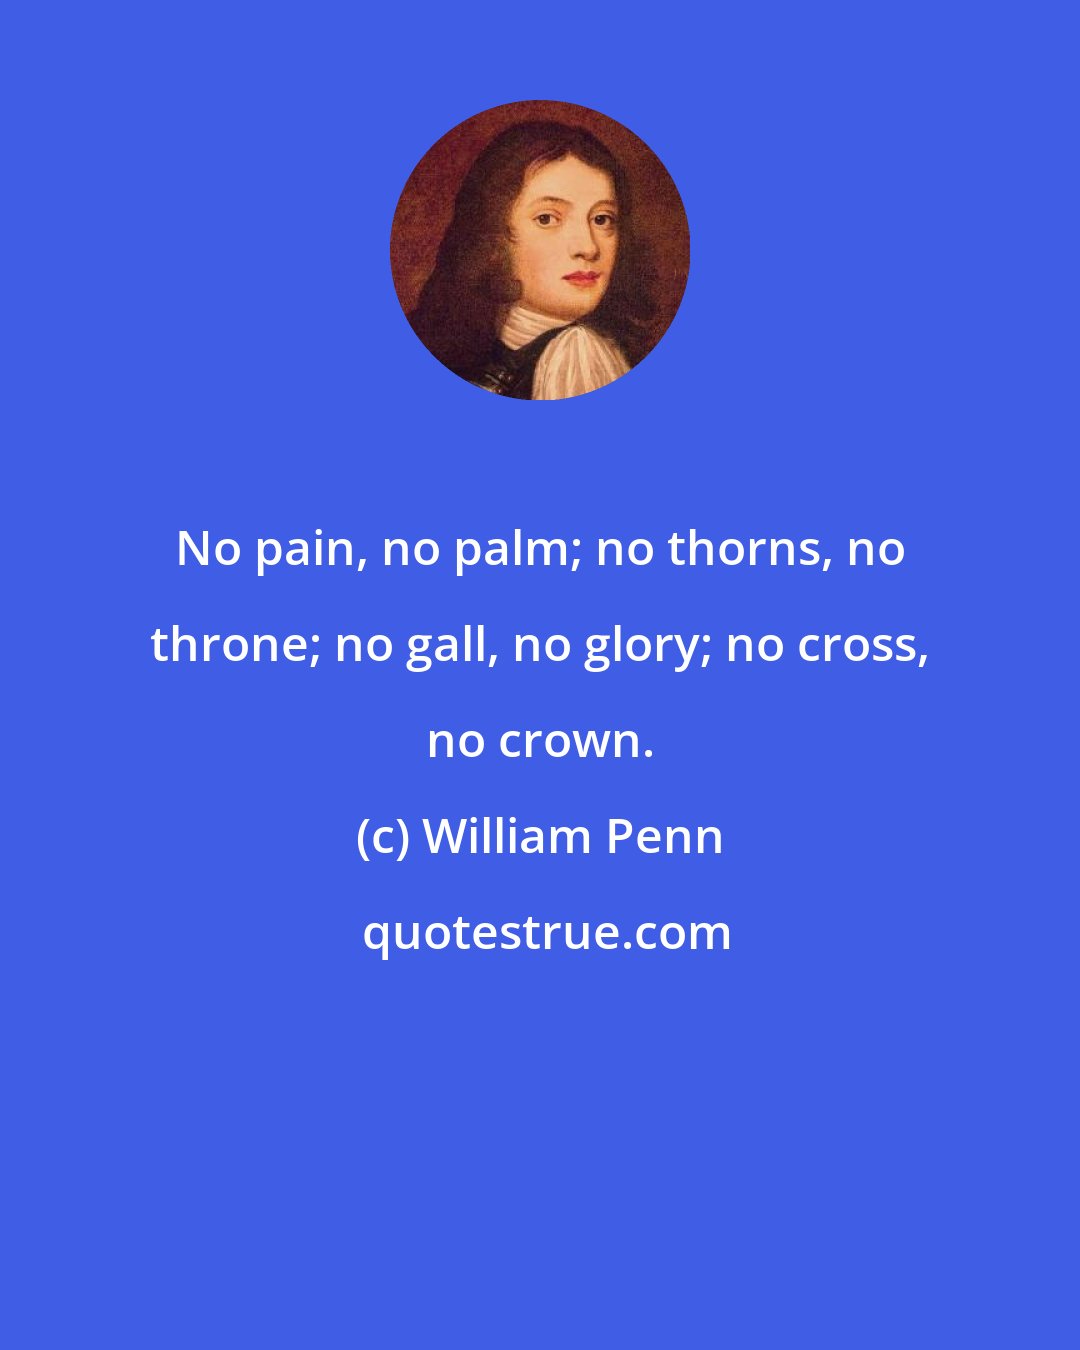 William Penn: No pain, no palm; no thorns, no throne; no gall, no glory; no cross, no crown.